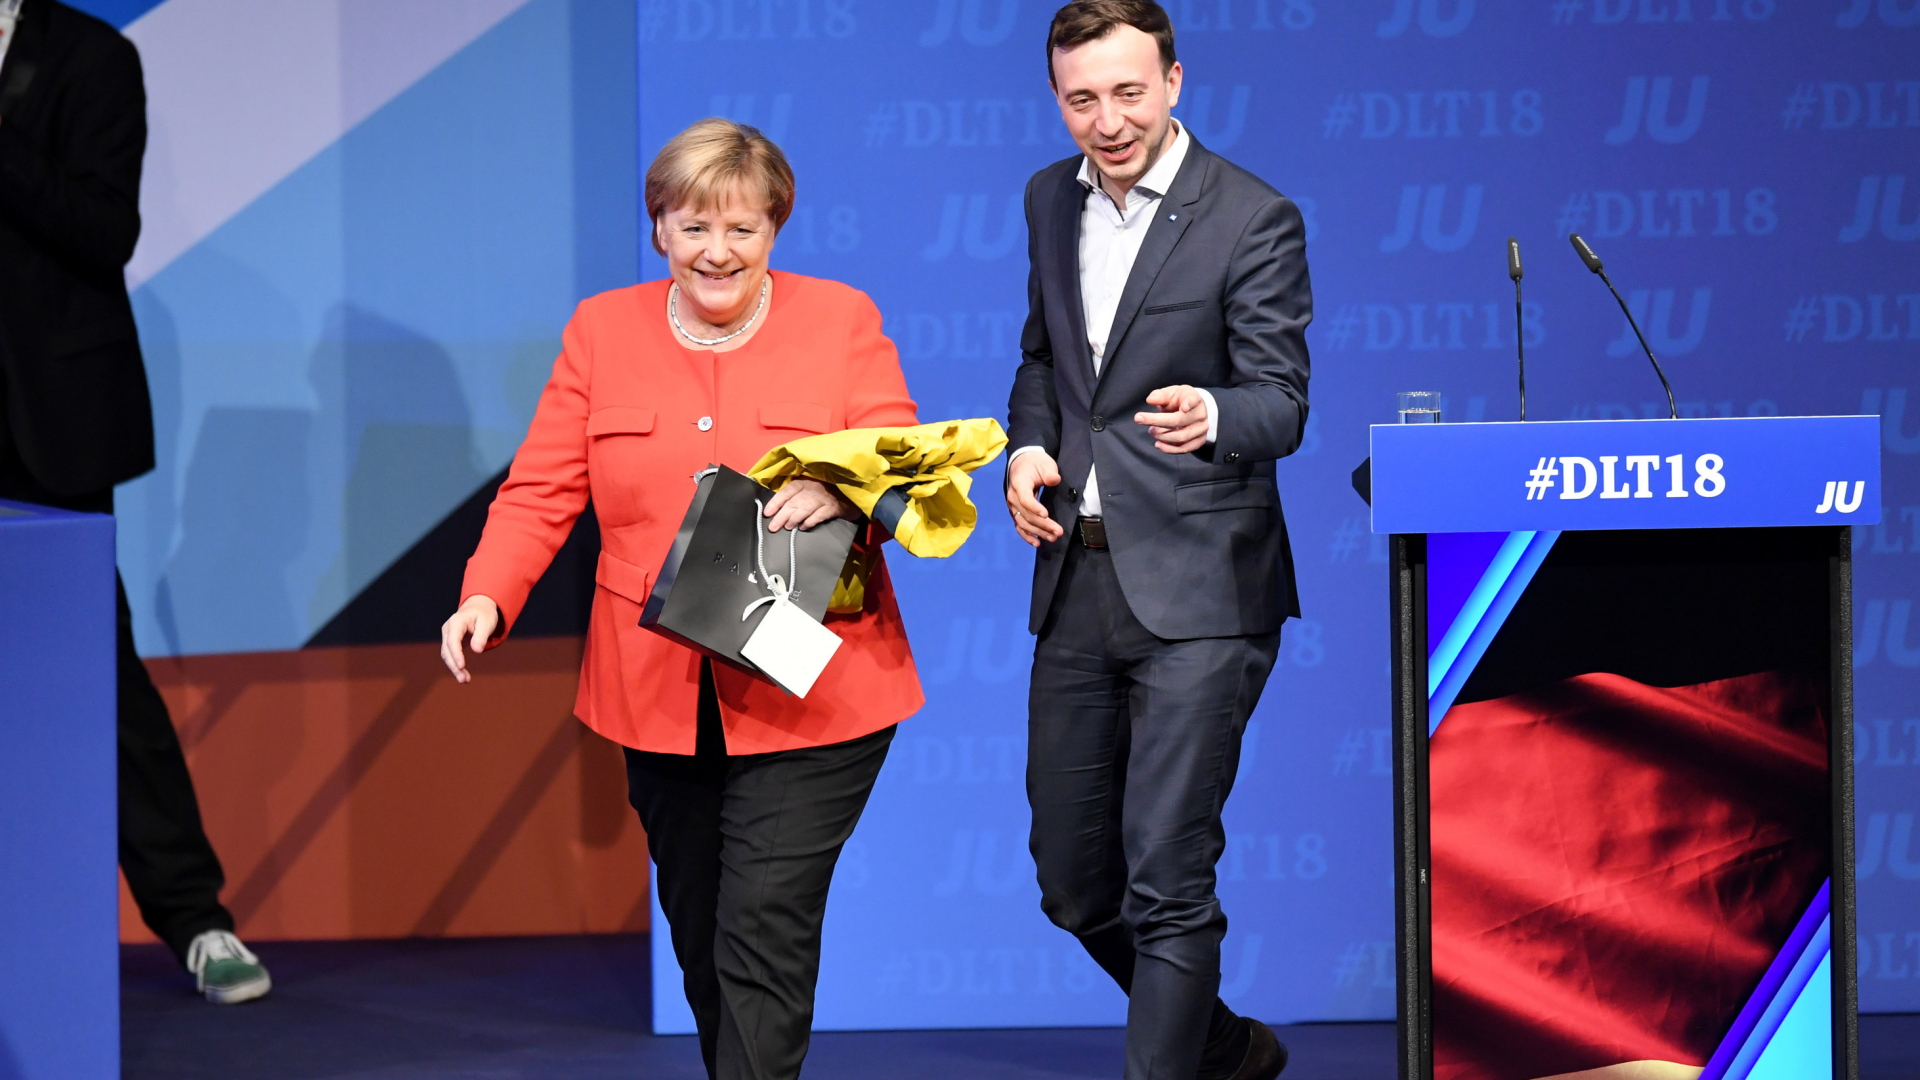 Kanzlerin Merkel verlässt nach einer Rede vor der Jungen Union gemeinsam mit Paul Ziemiak die Bühne. | Bildquelle: dpa